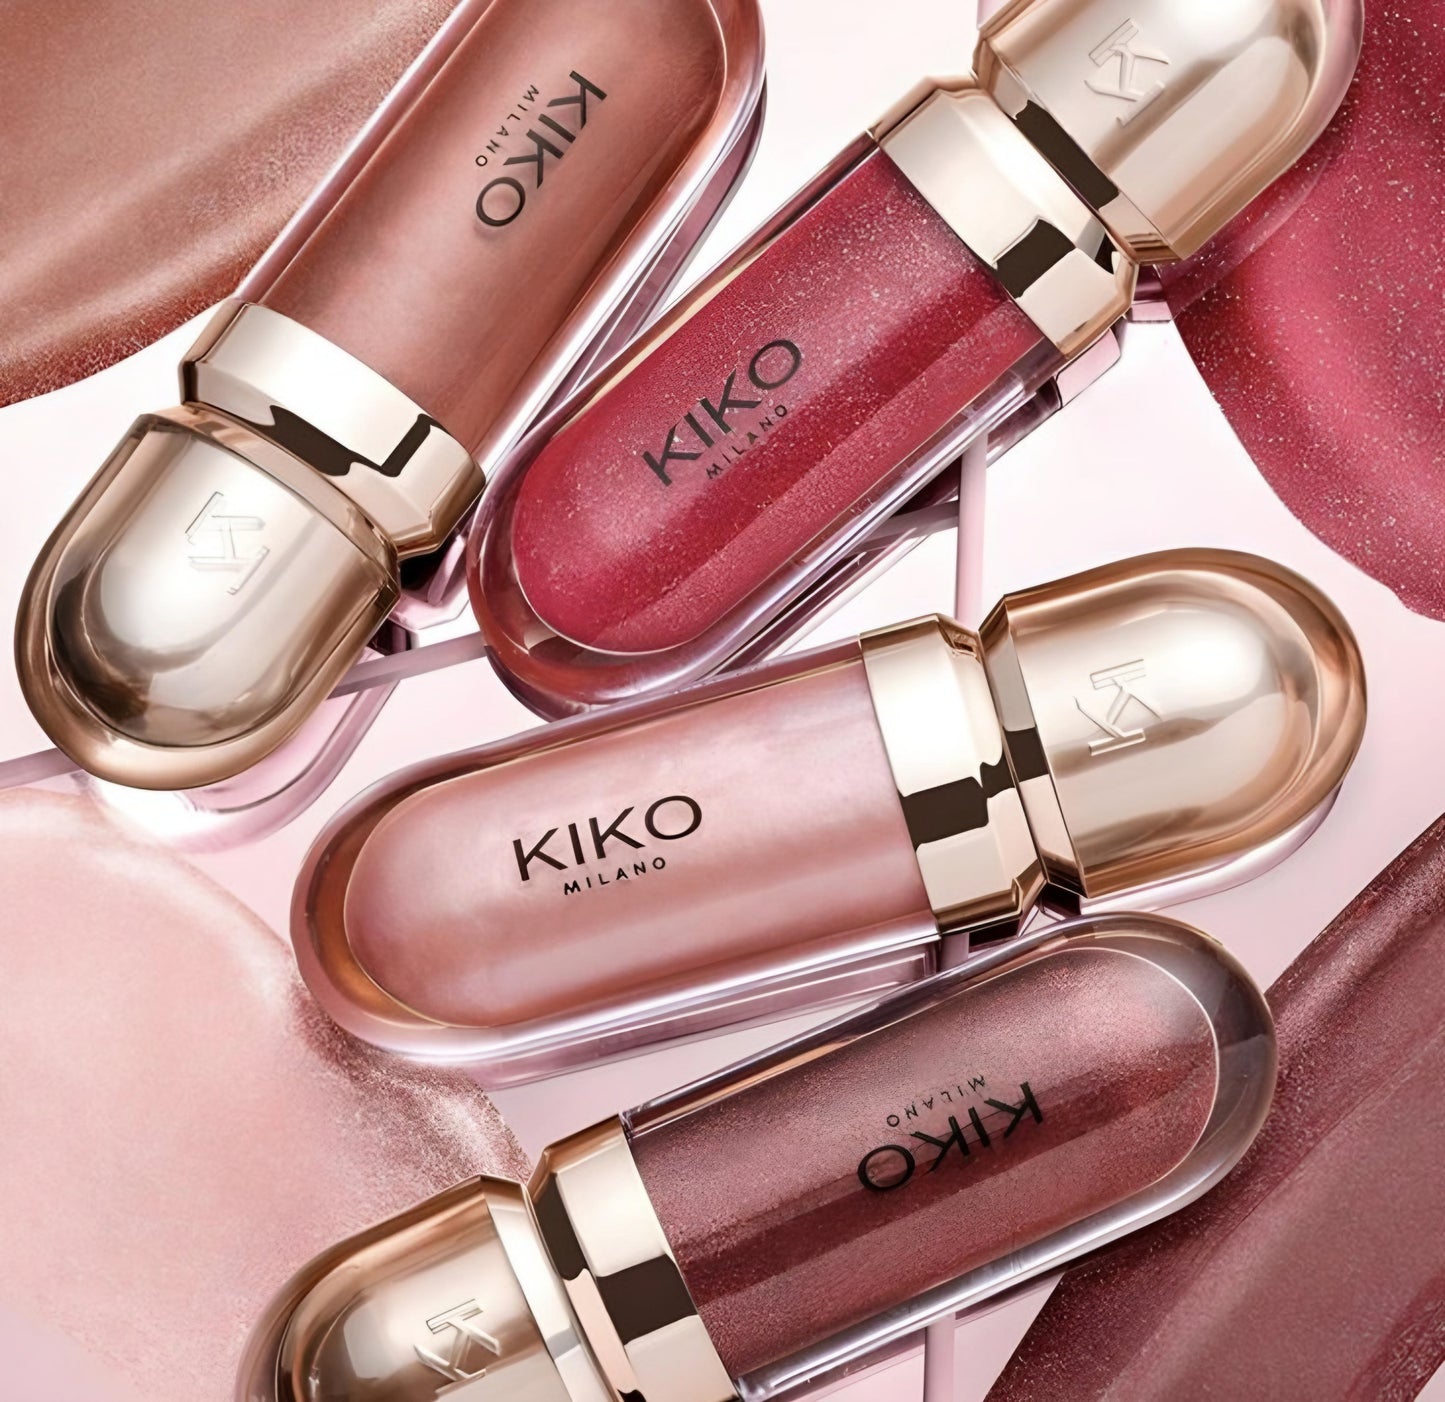 Kiko milano lipgloss some shades 